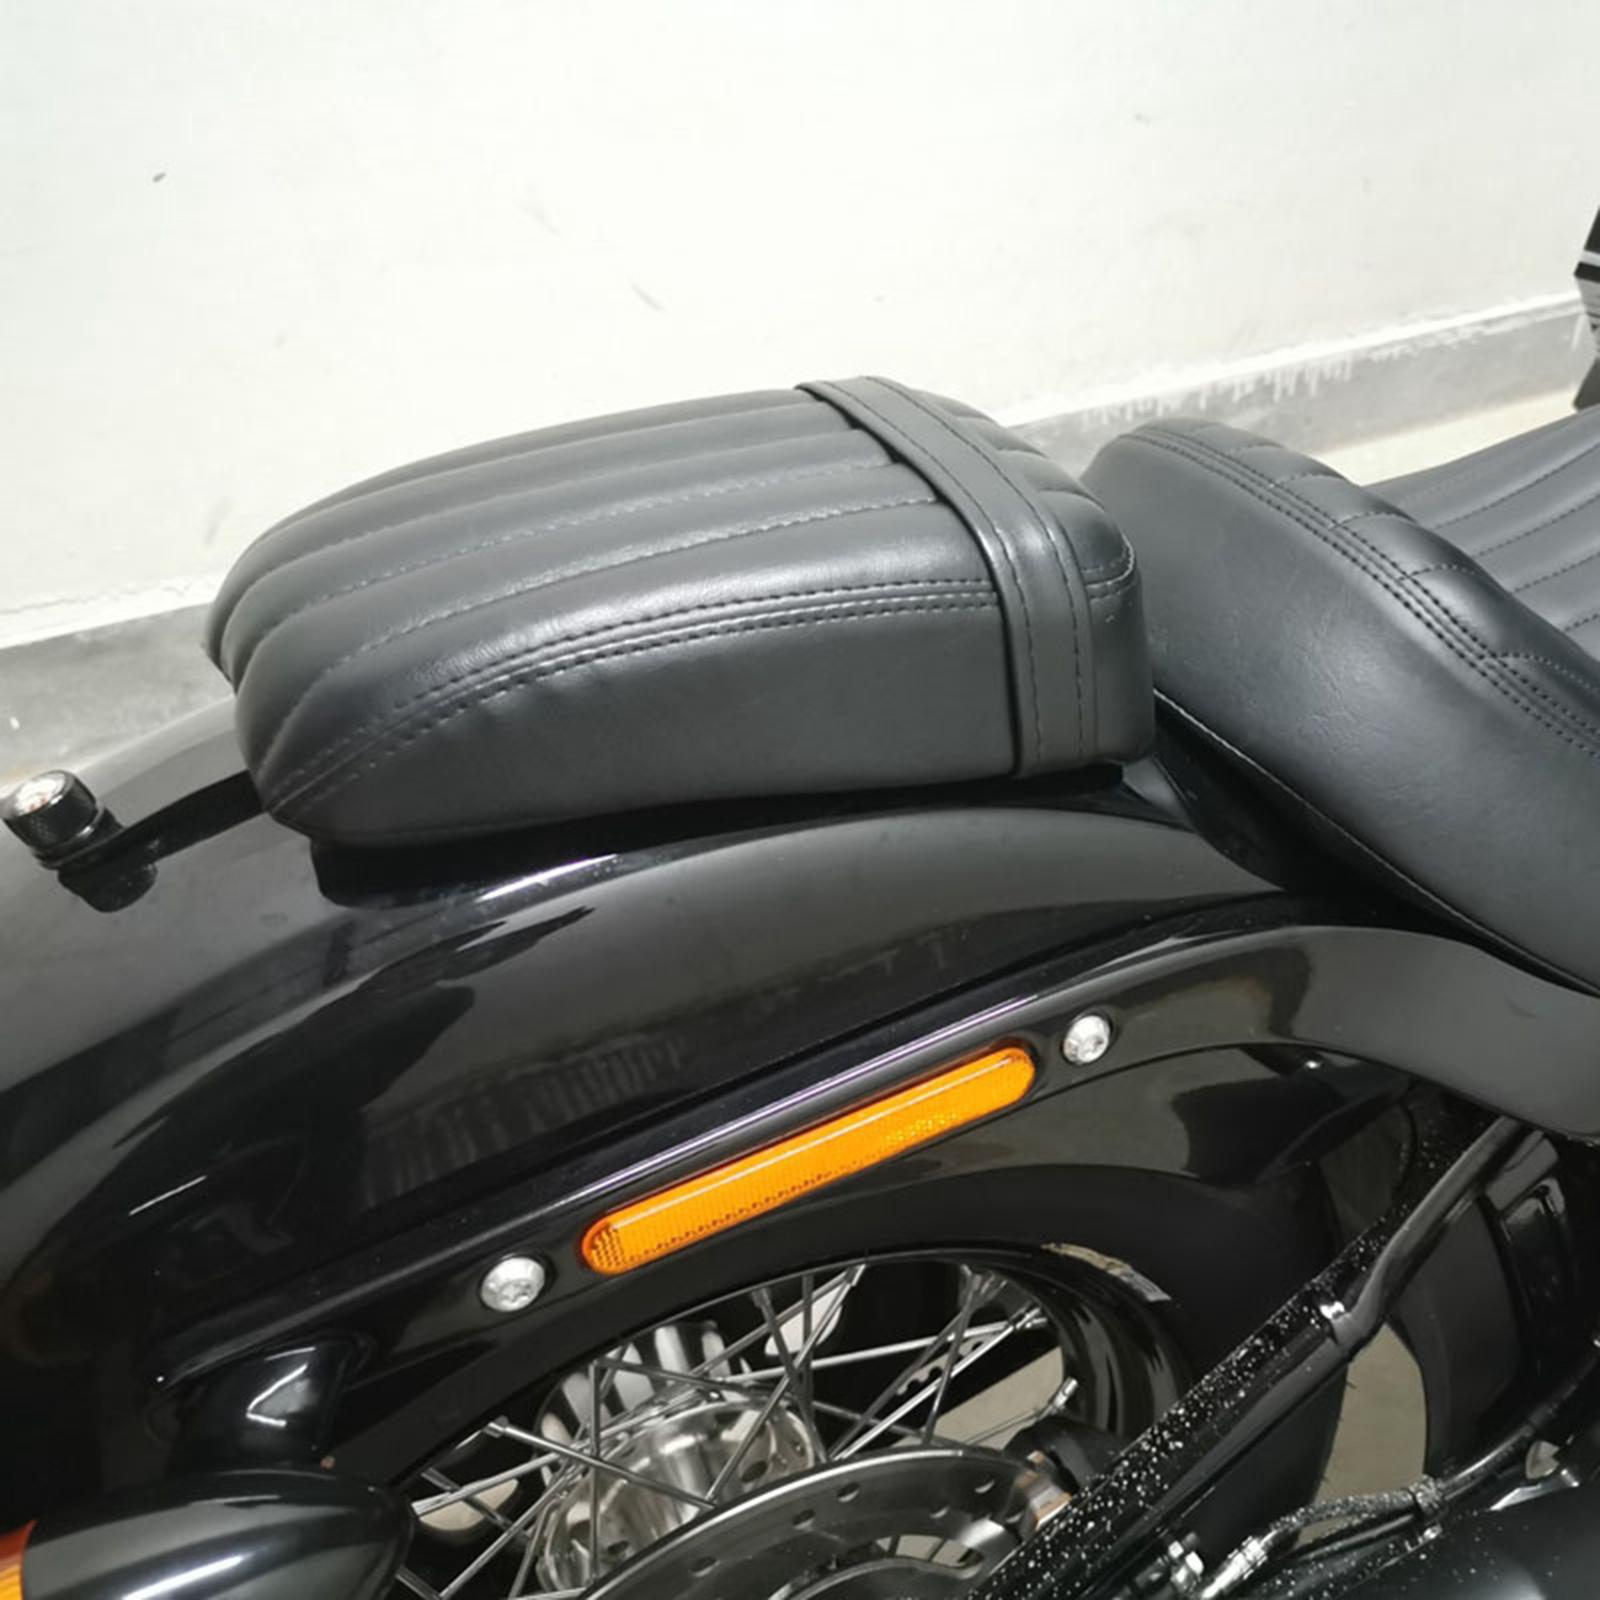 motorcycle pillion seats